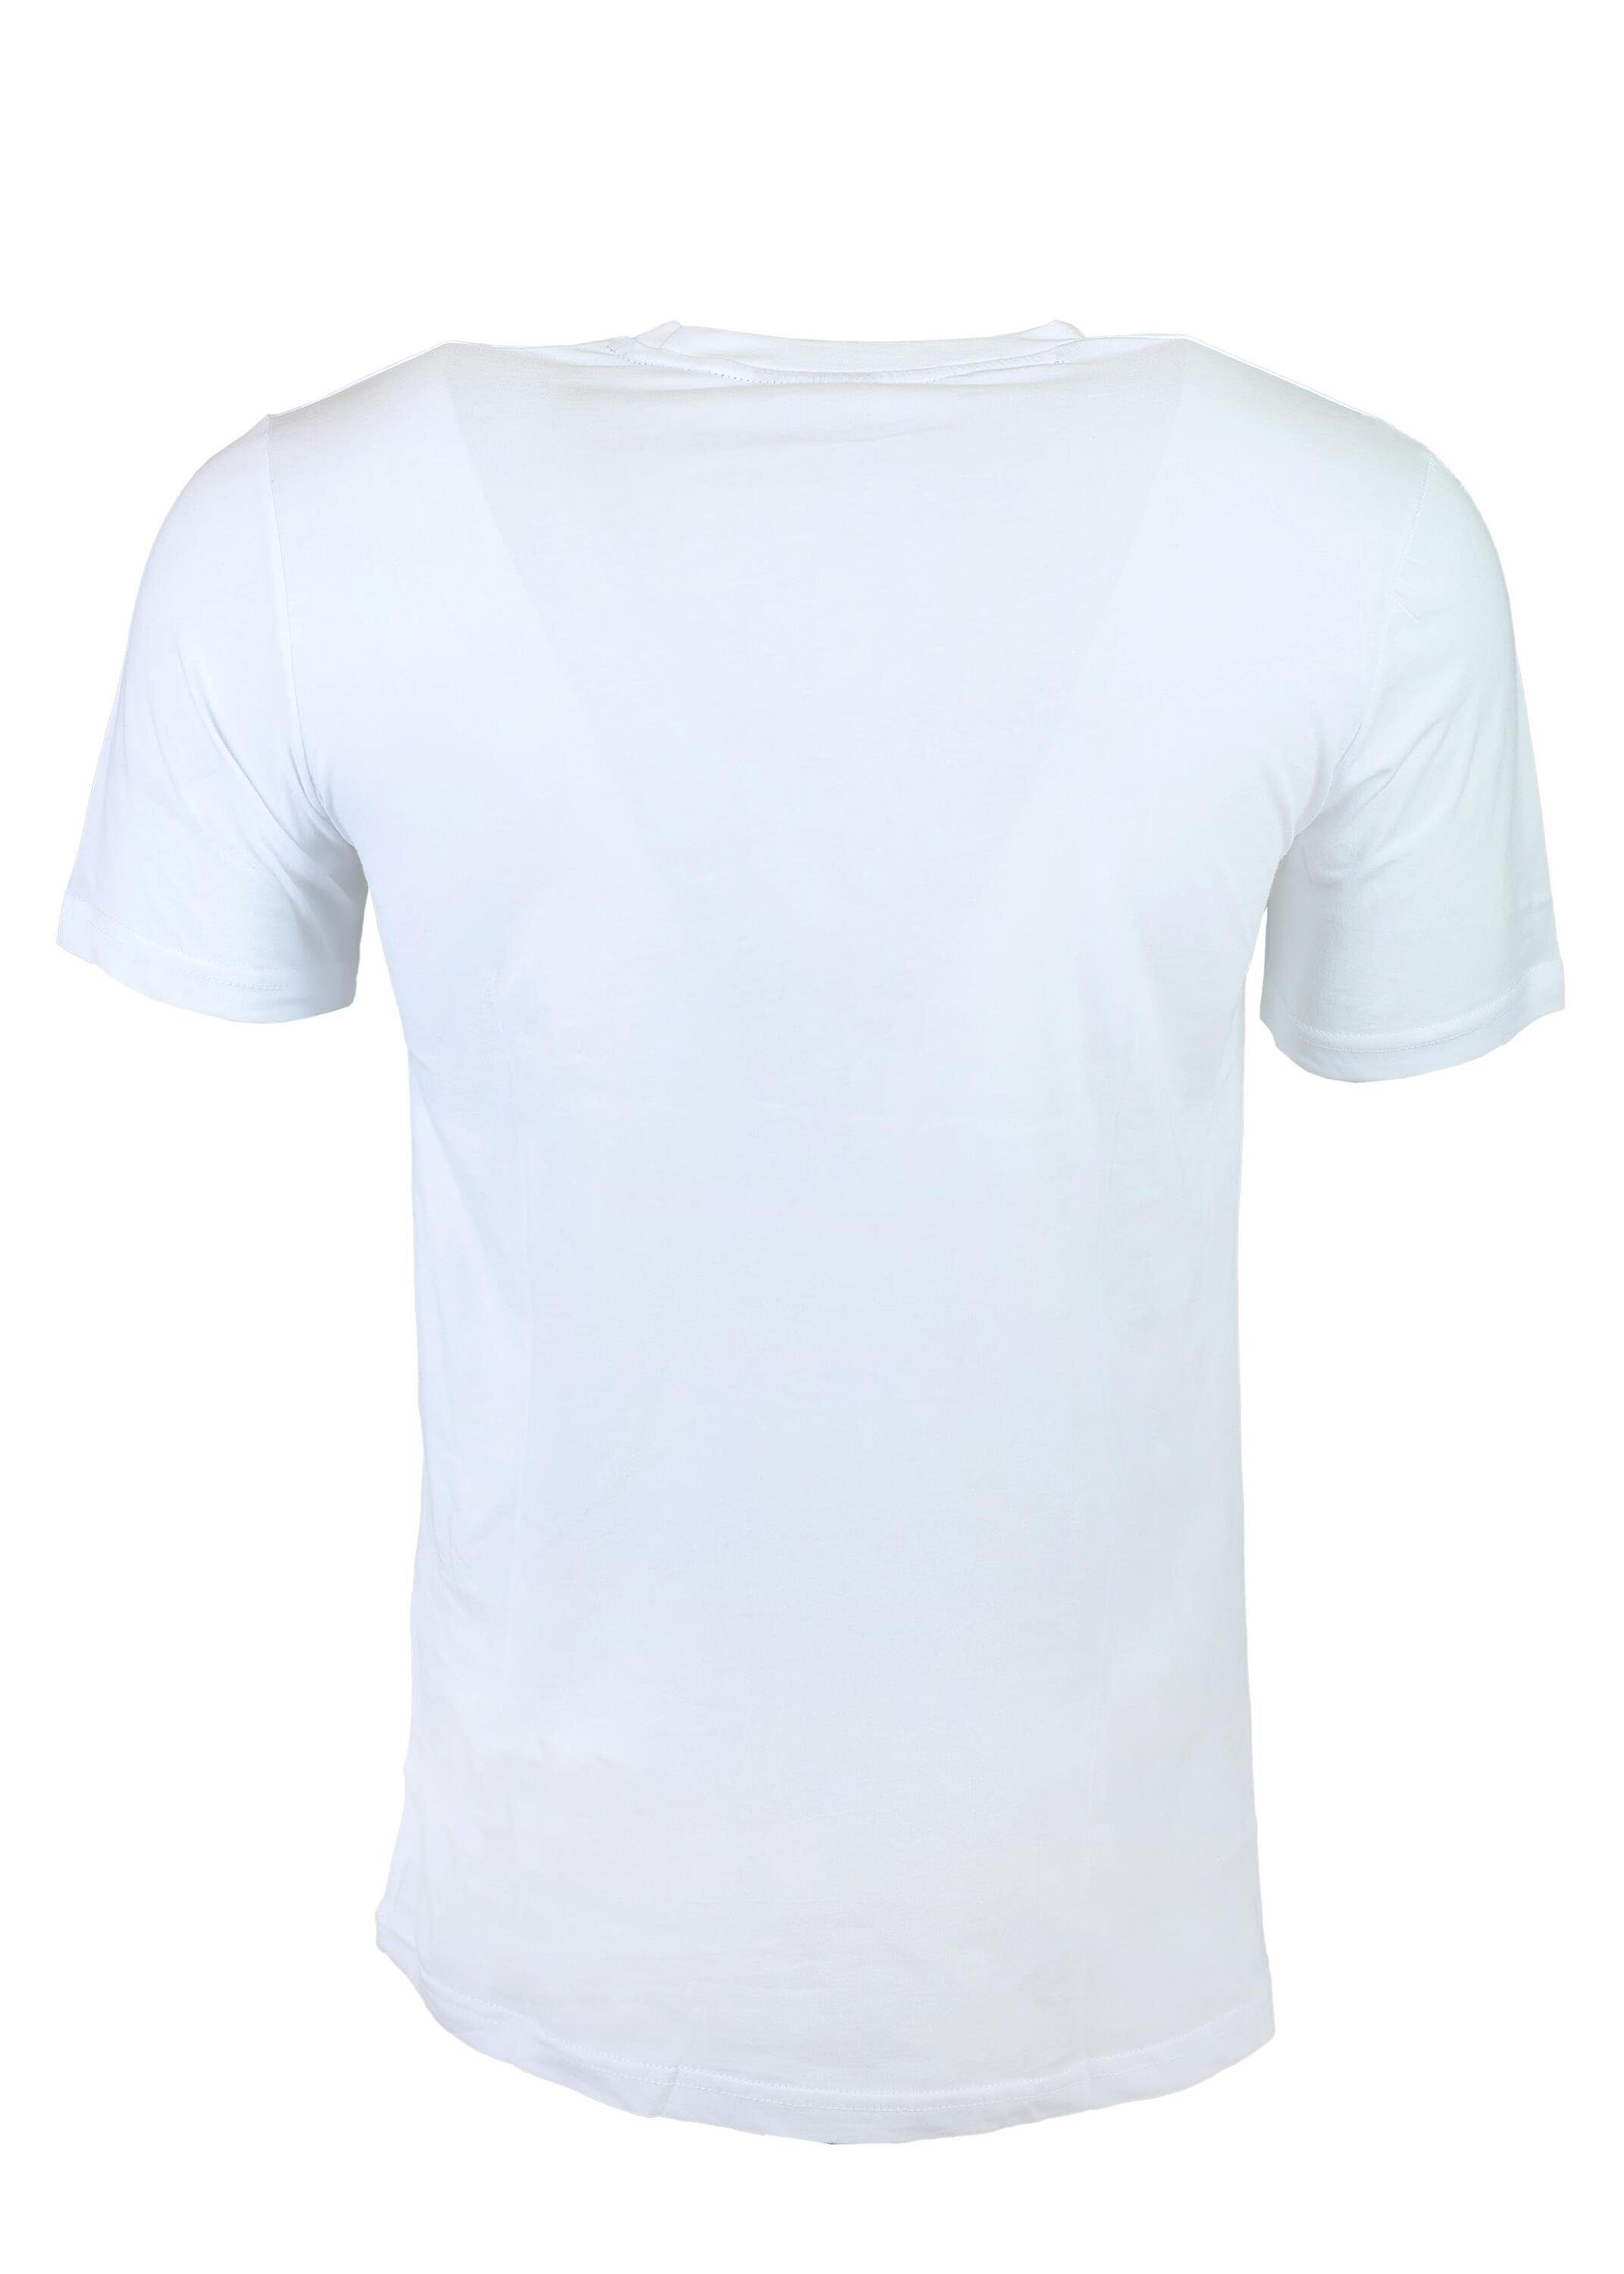 FuPer T-Shirt Kinder, Jugend aus Baumwolle, Fußball, White Tarik für